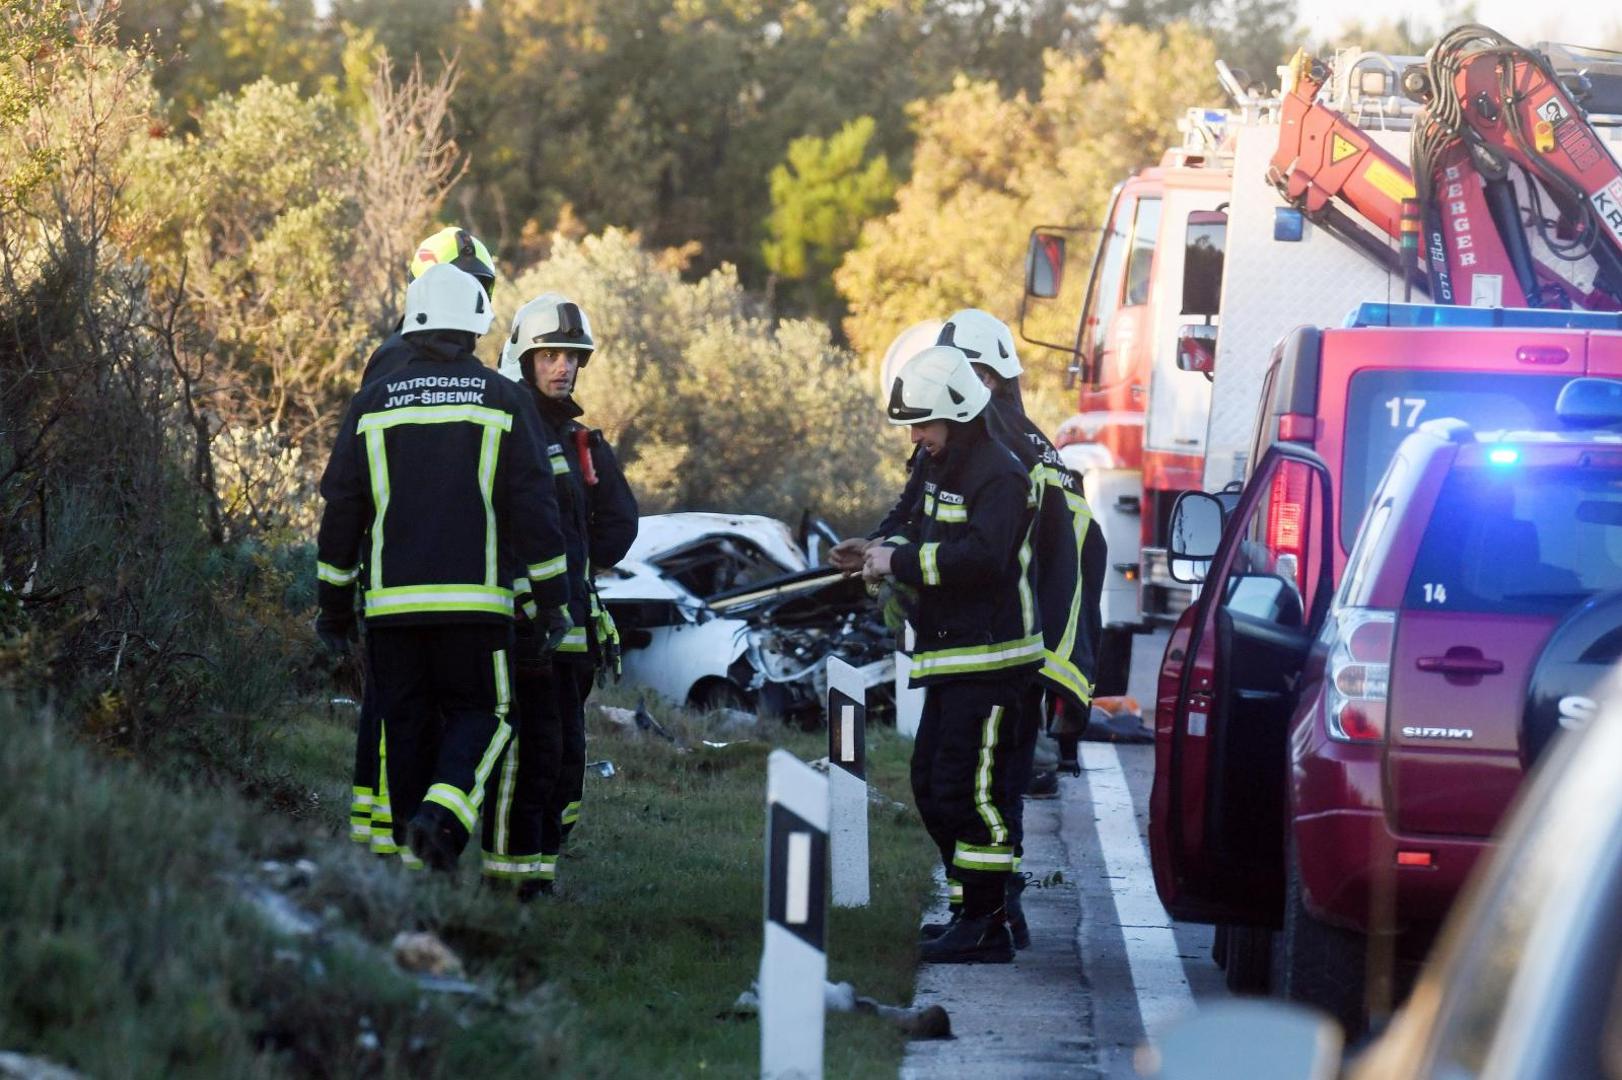 30.11.2020., Sibenik - U prometnoj nesreci na cesti D-8 jedna osoba je smrtno stradala, a dvije su ozlijedjene.
Photo: Hrvoje Jelavic/PIXSELL